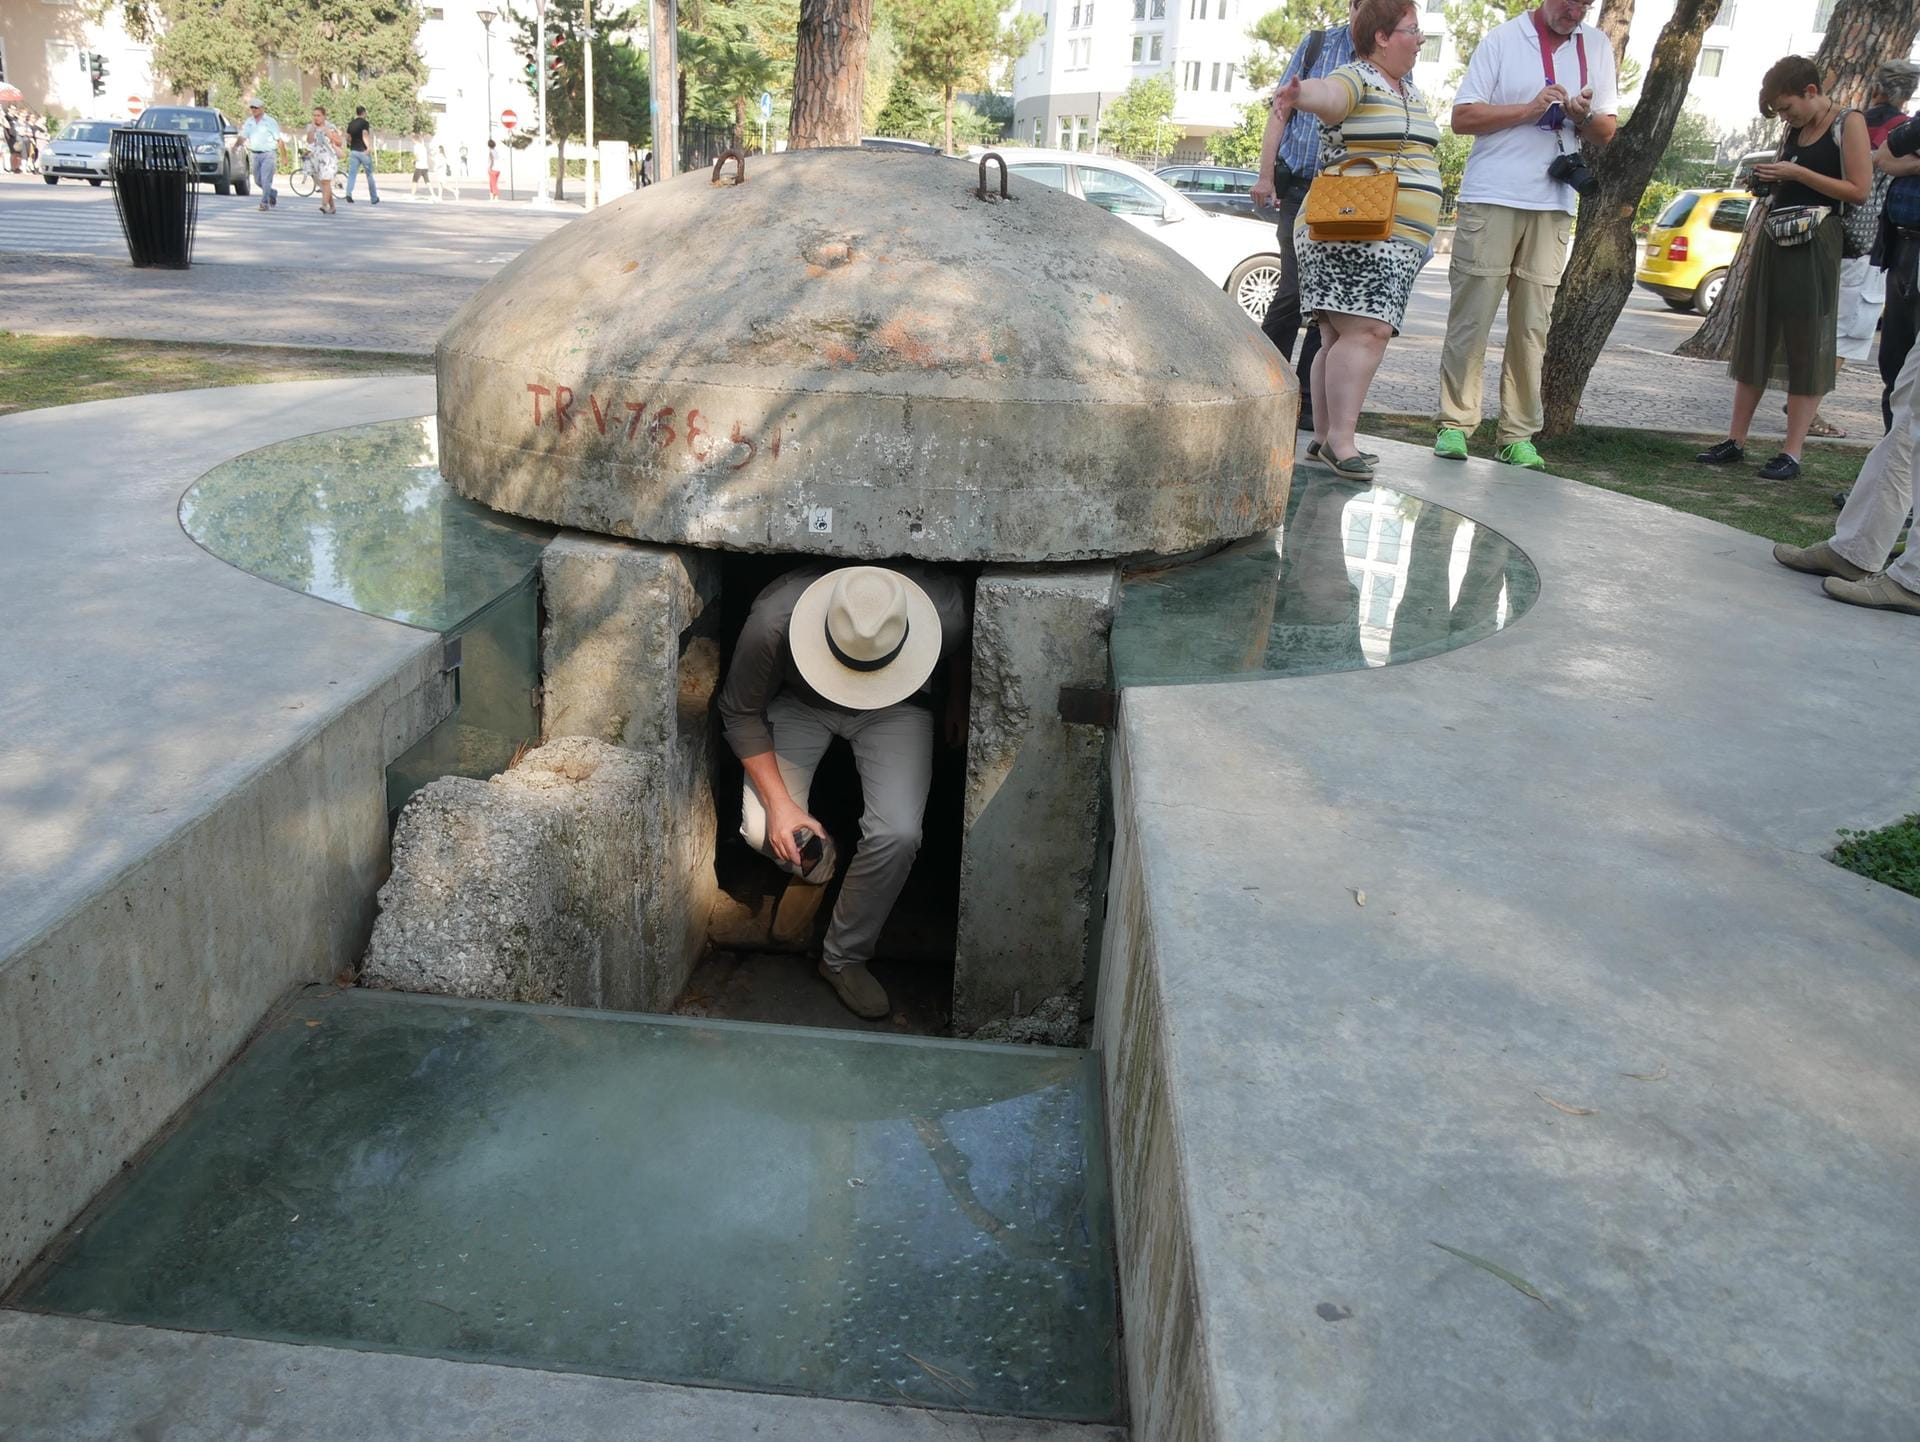 Mini-Bunker für zwei Personen, wie hier in Tirana, stehen wie Pilze im ganzen Land. Das Land kokettiert ganz bewusst mit seiner kommunistischen Vergangenheit und setzt auf "dunklen Tourismus".